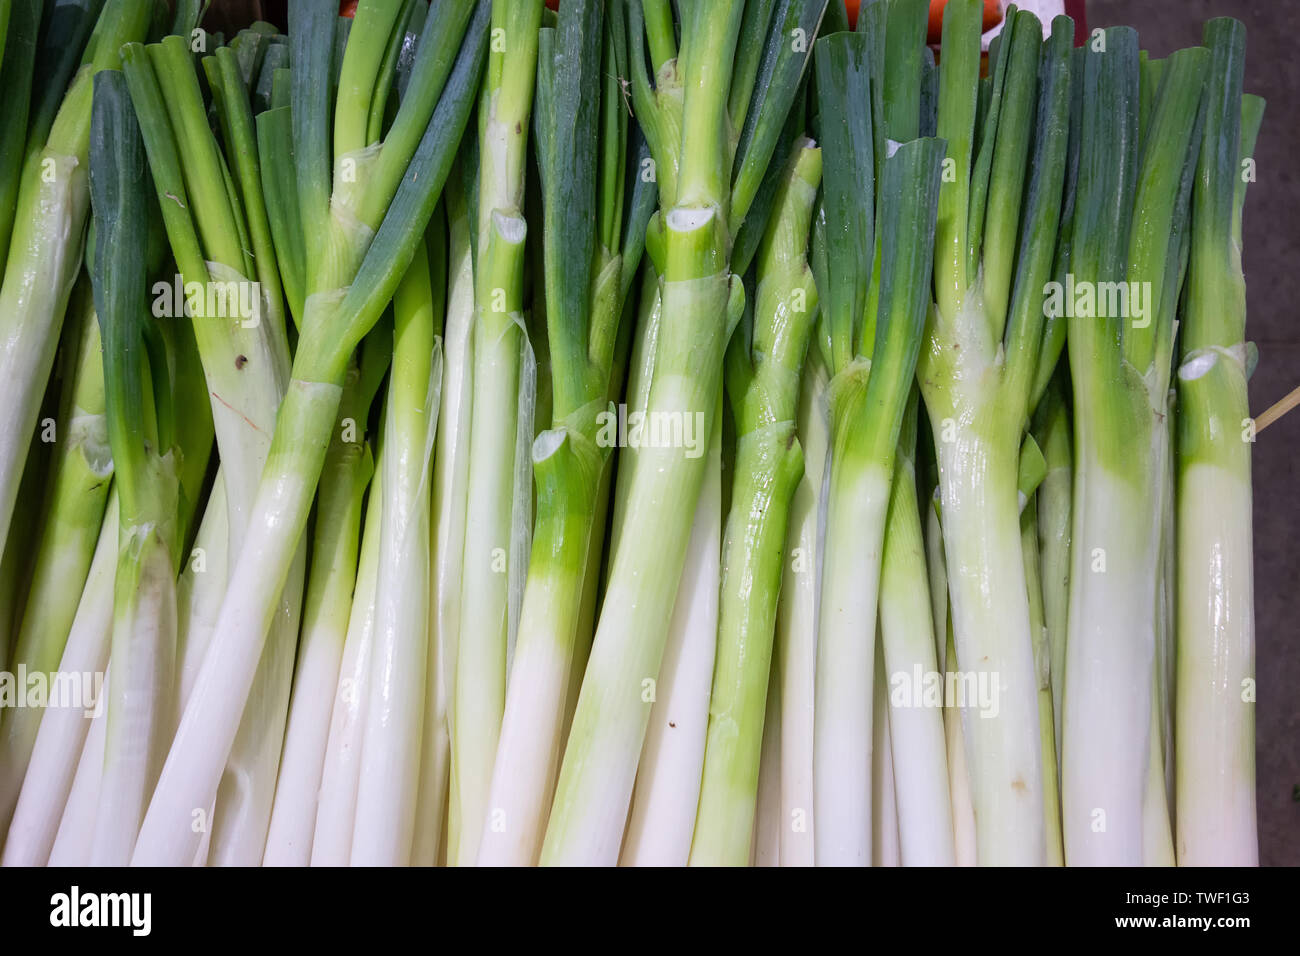 Un oignon vert en attente d'être vendu dans un marché de légumes en gros. Banque D'Images